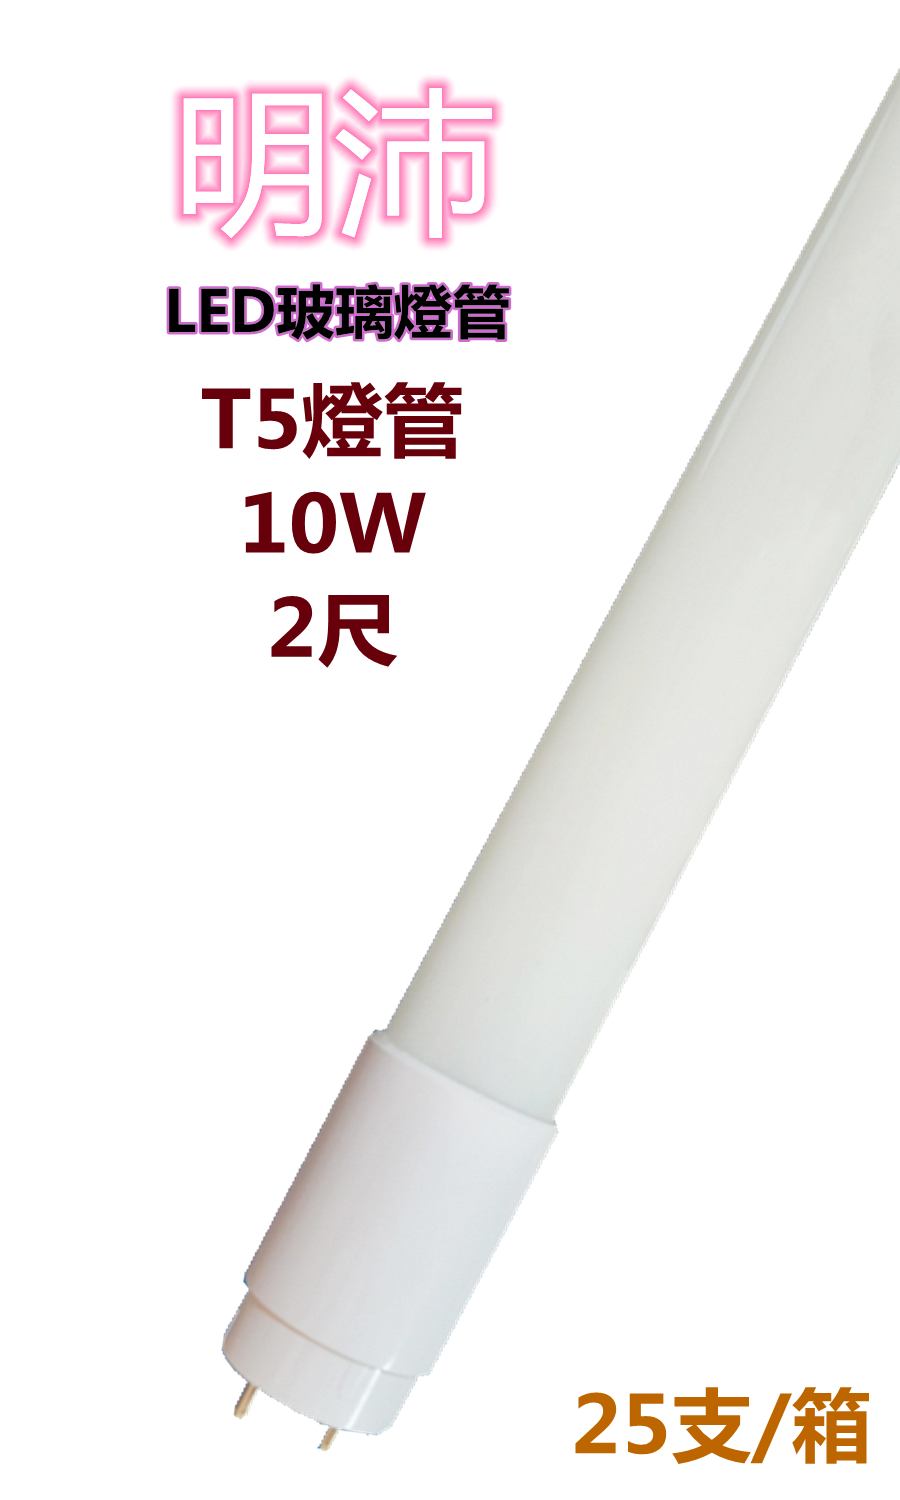 【明沛】T5燈管 LED高亮度燈管 10W (2尺-白光) MP5746 ※購買以箱為單位※每箱25支※